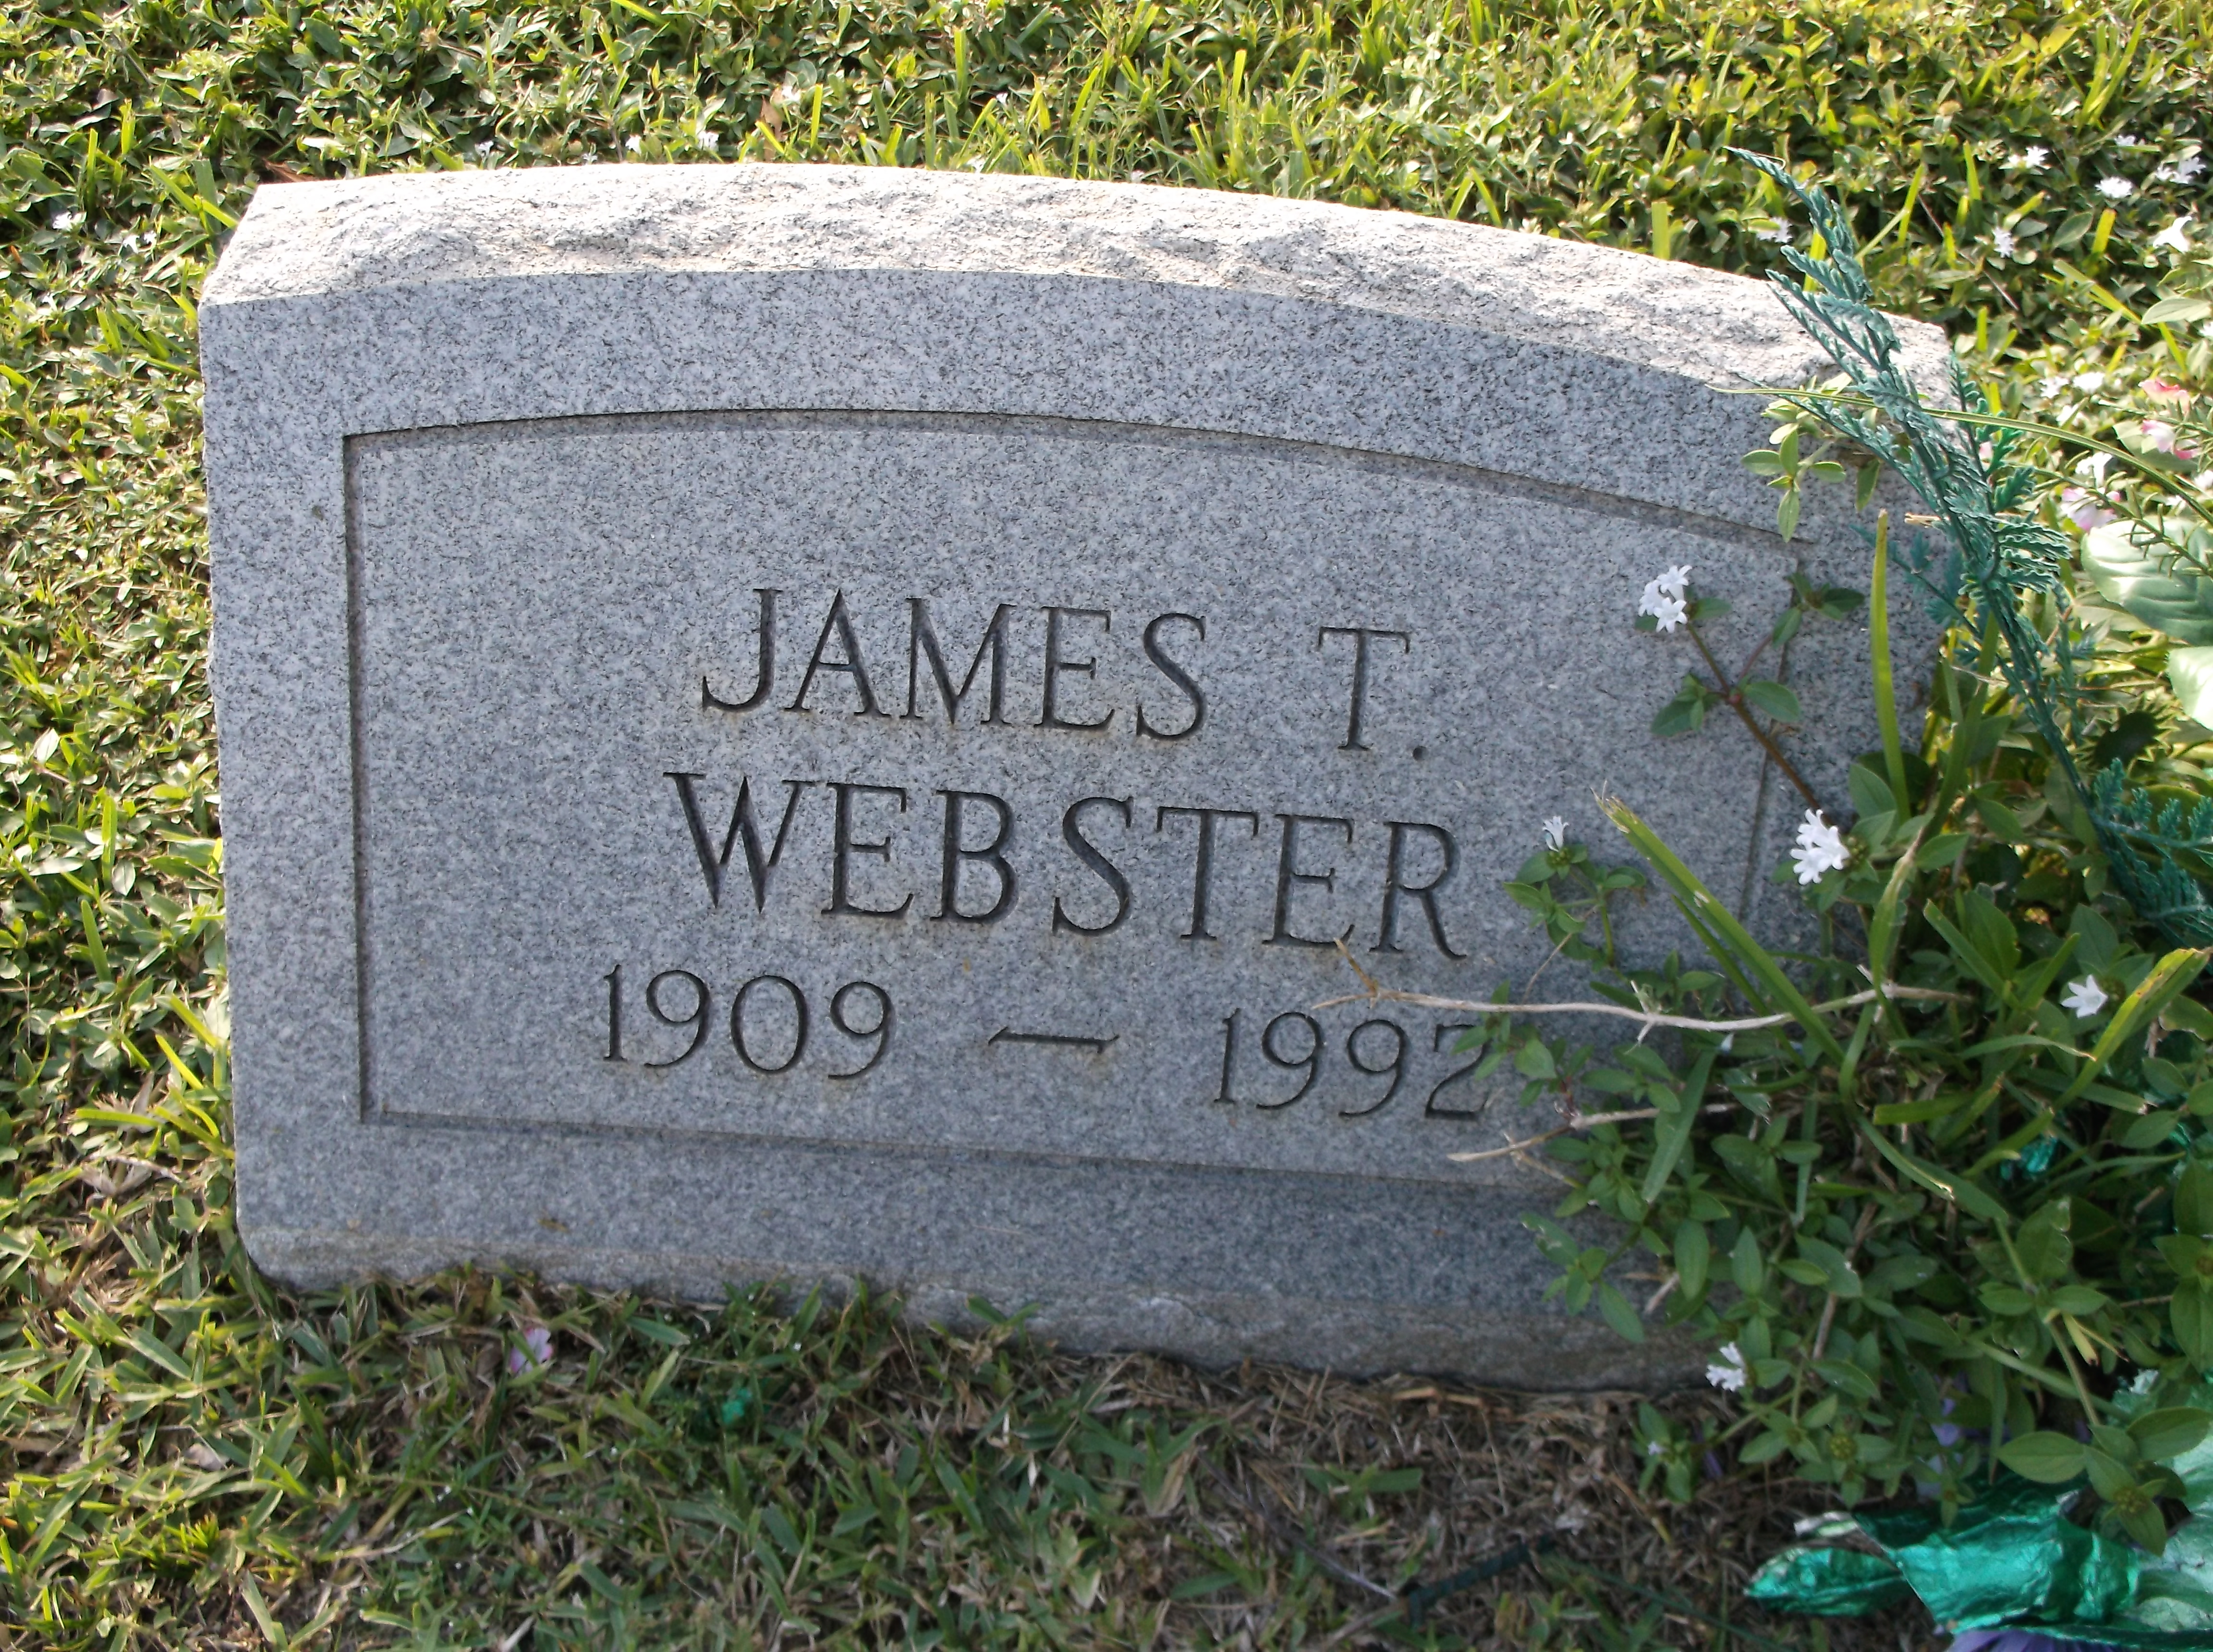 James T Webster